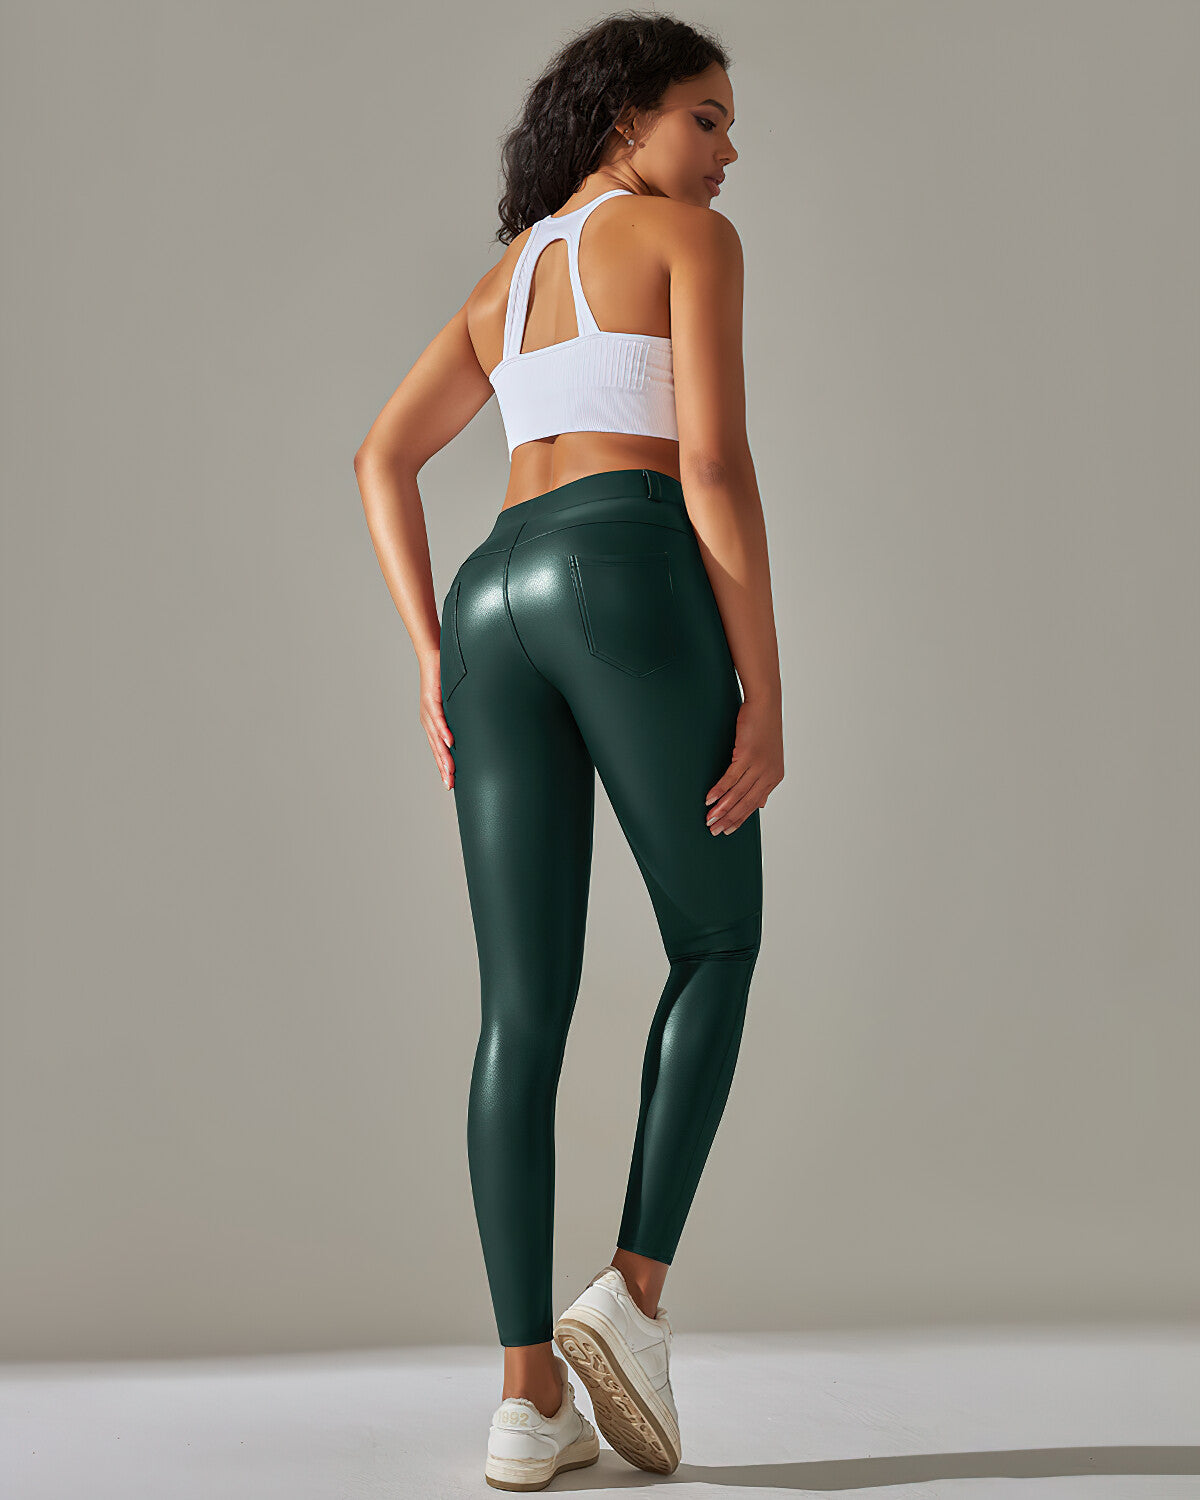 Kenna Vegan Leather Leggings - Green